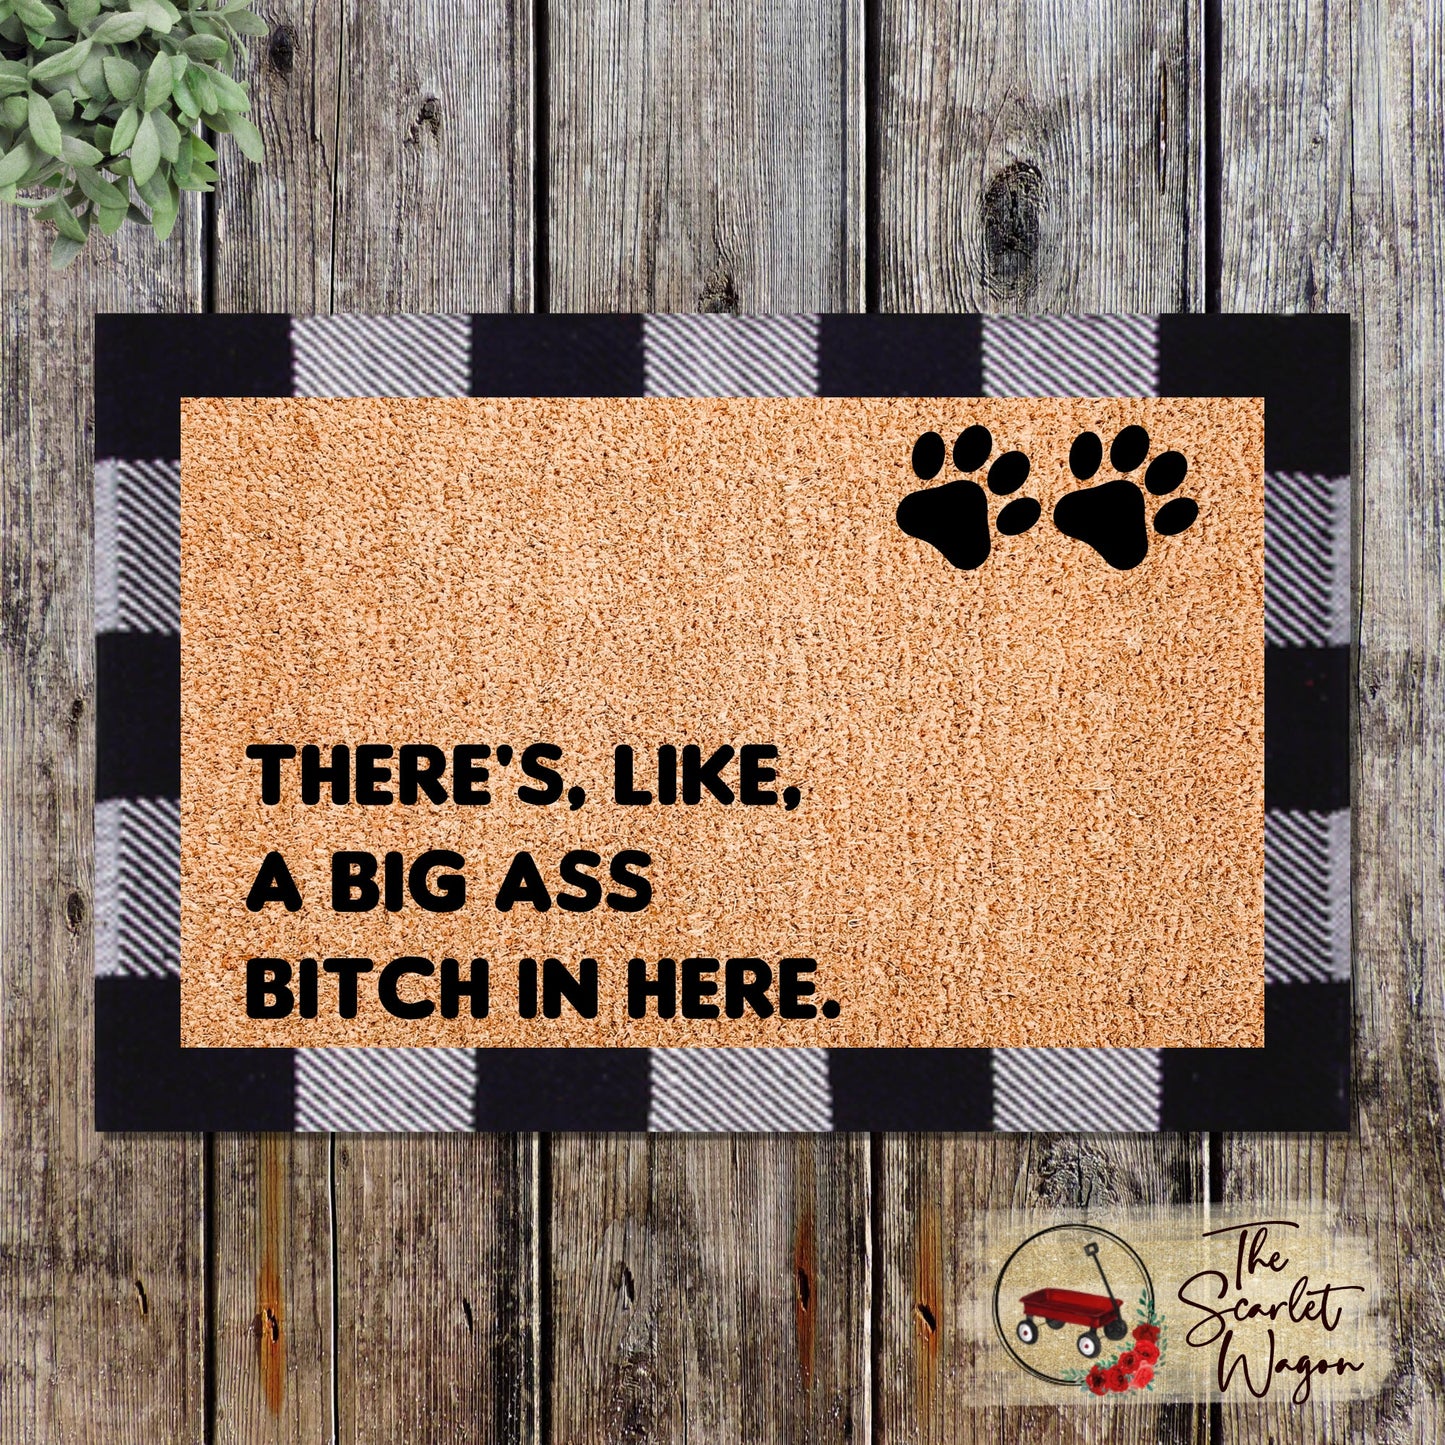 Big Ass Dogs - Doormat DeCoir - Doormat DeCoir